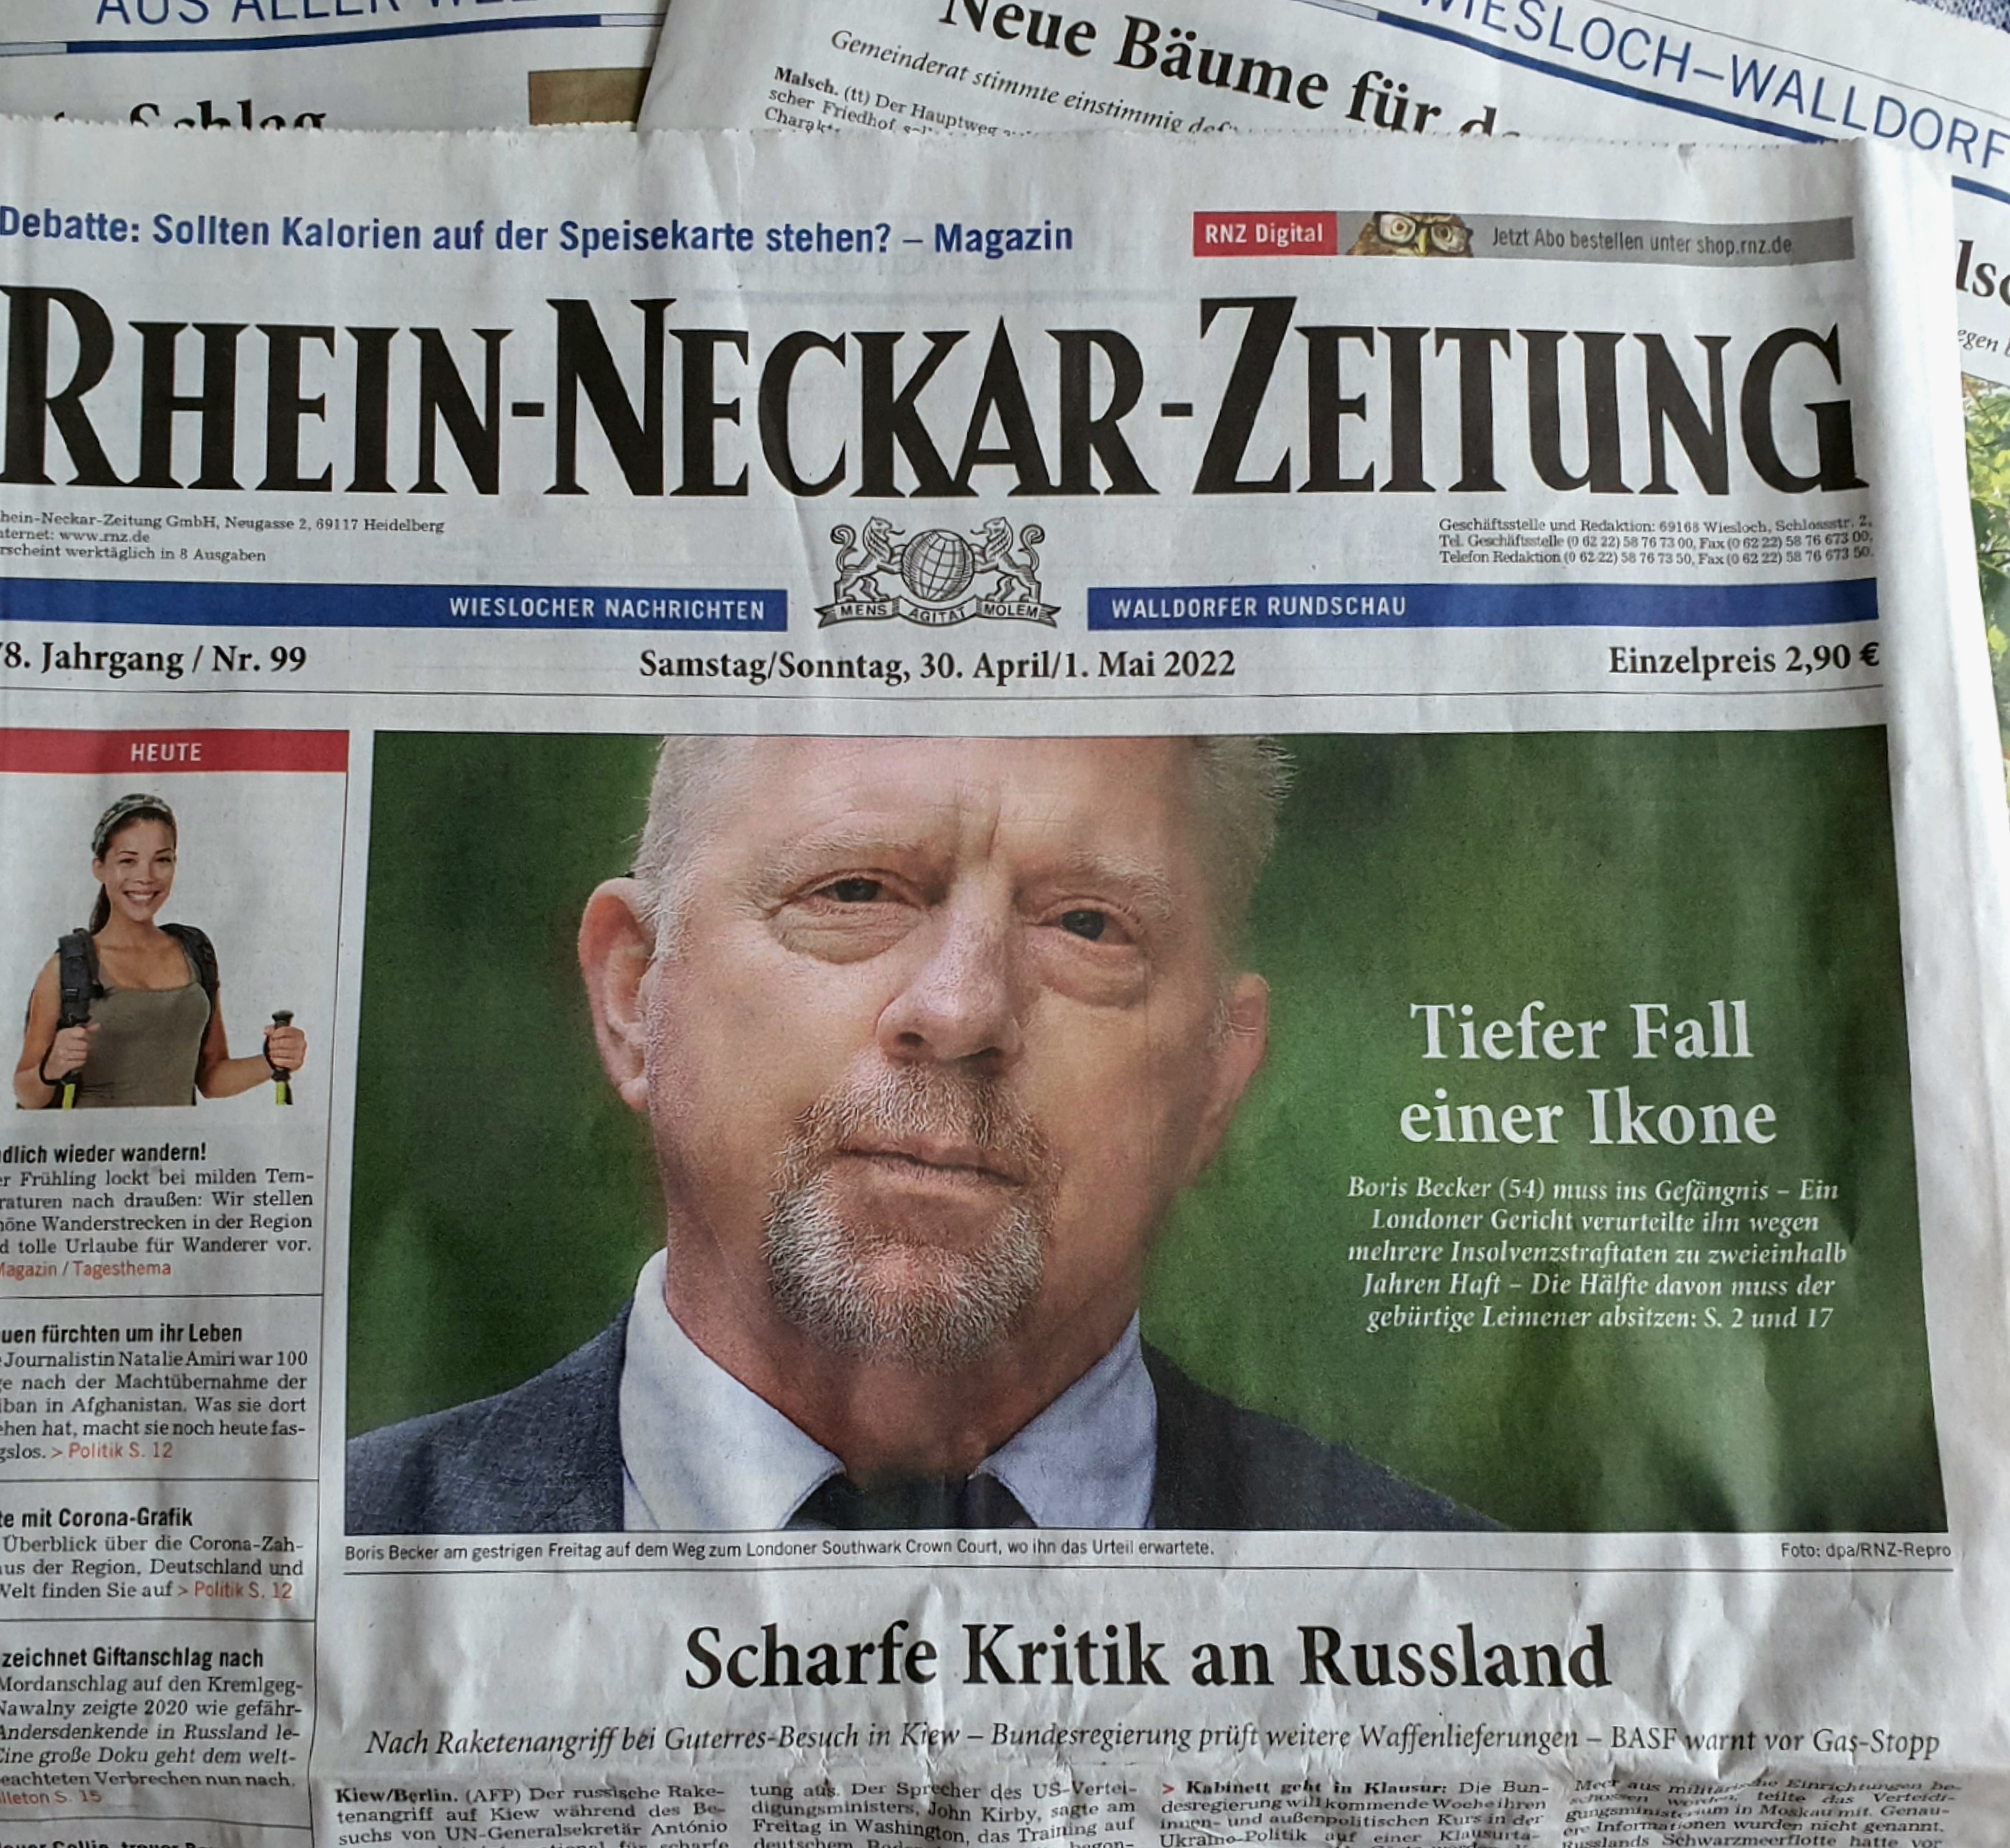 Rhein-Neckar-Zeitung im Mai 2022| Foto: Dr. Clemens Kriesel